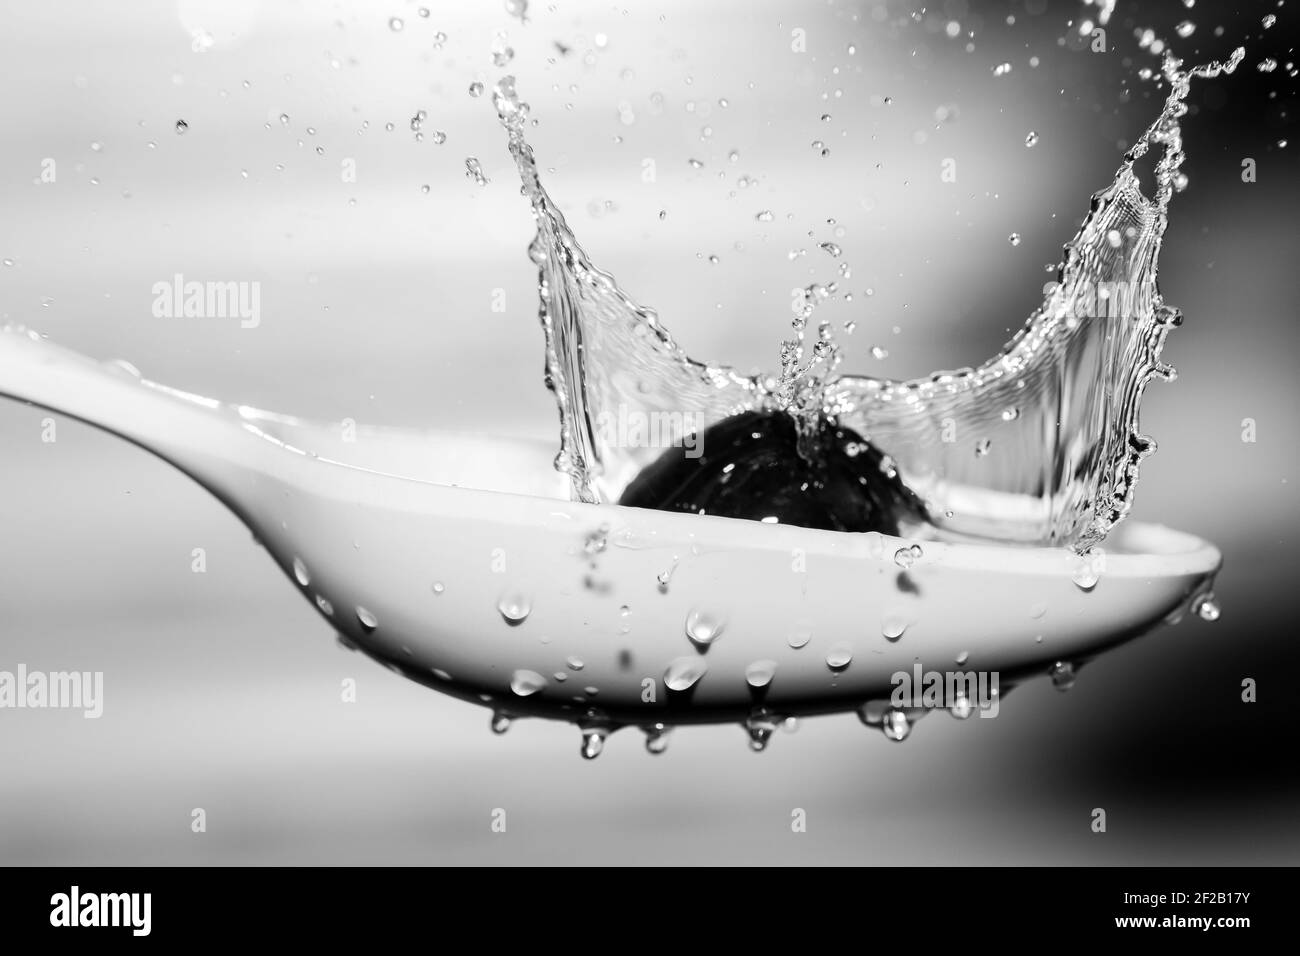 Aceituna negra cayendo sobre cuchara blanca cubierta de agua Stock Photo